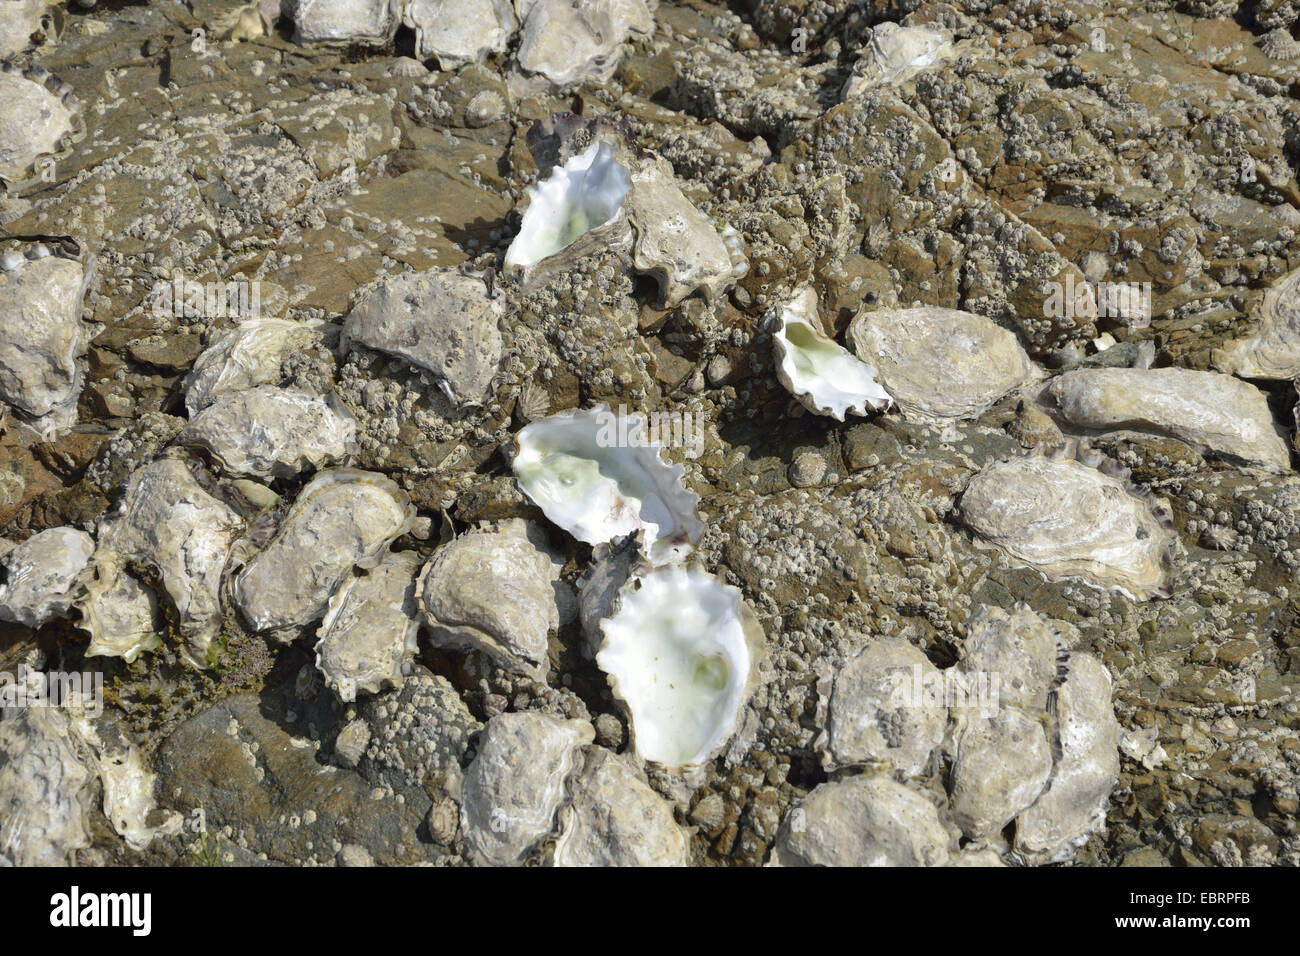 Pazifische Auster schalenförmige, schalenförmig Mangrove Auster (Crassostrea Rhizophorae), Leben in der wilden Austern bei Ebbe, Frankreich, Bretagne Stockfoto